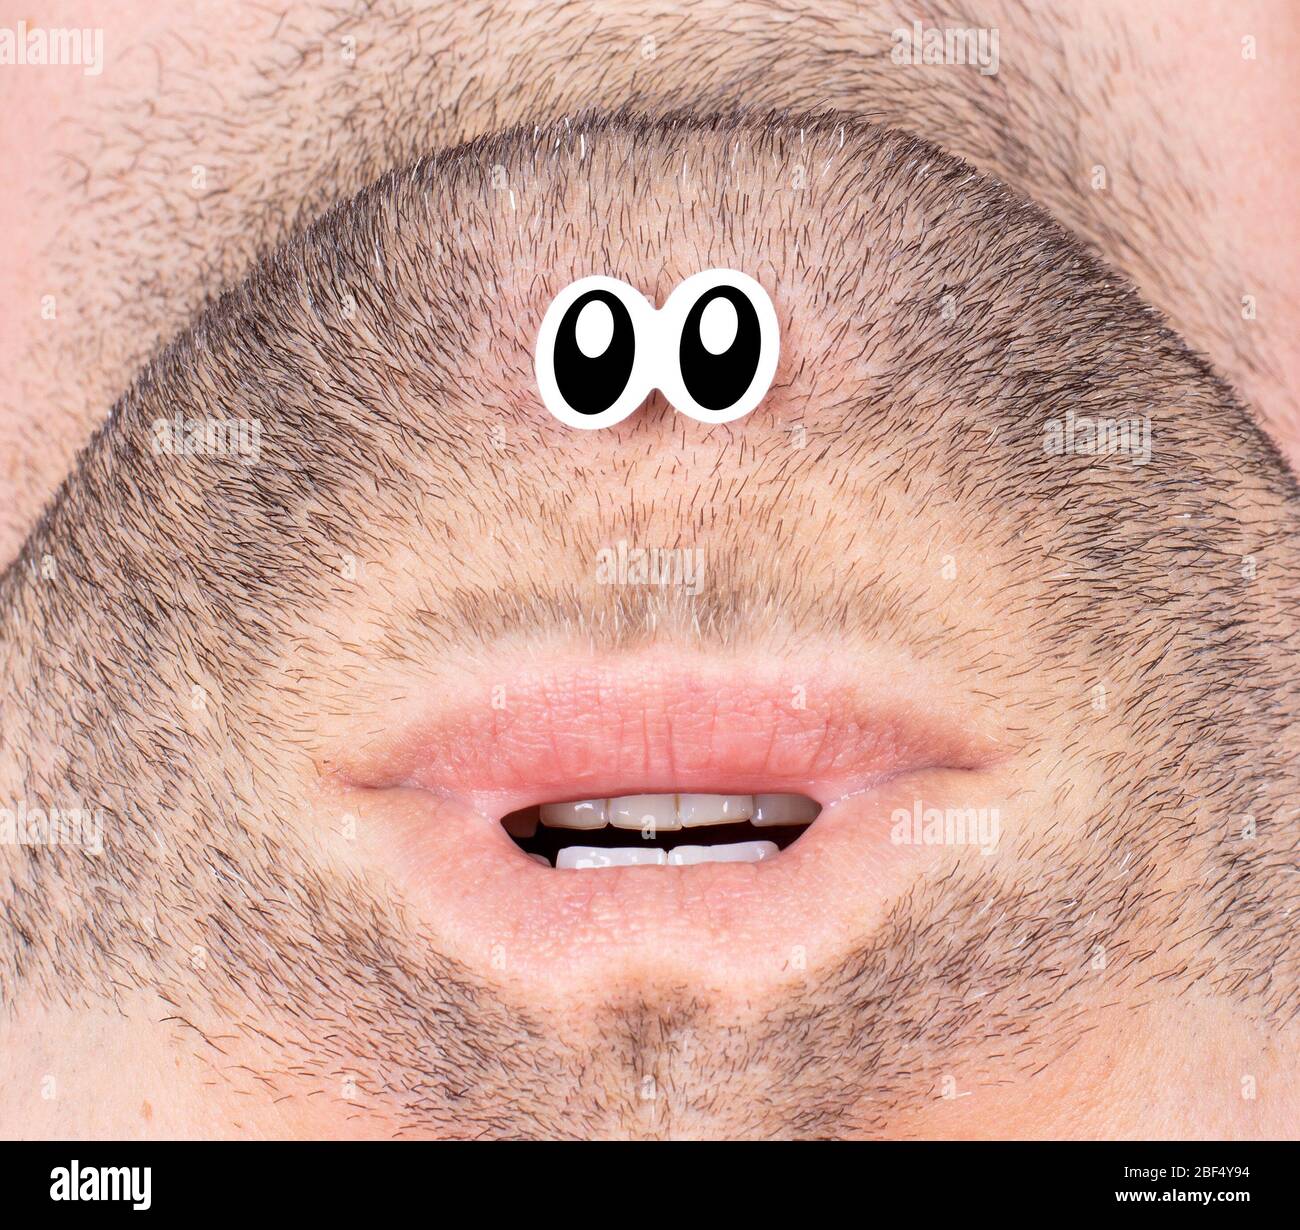 Immagine divertente di una bocca e occhi falsi - carattere strano - primo piano Foto Stock